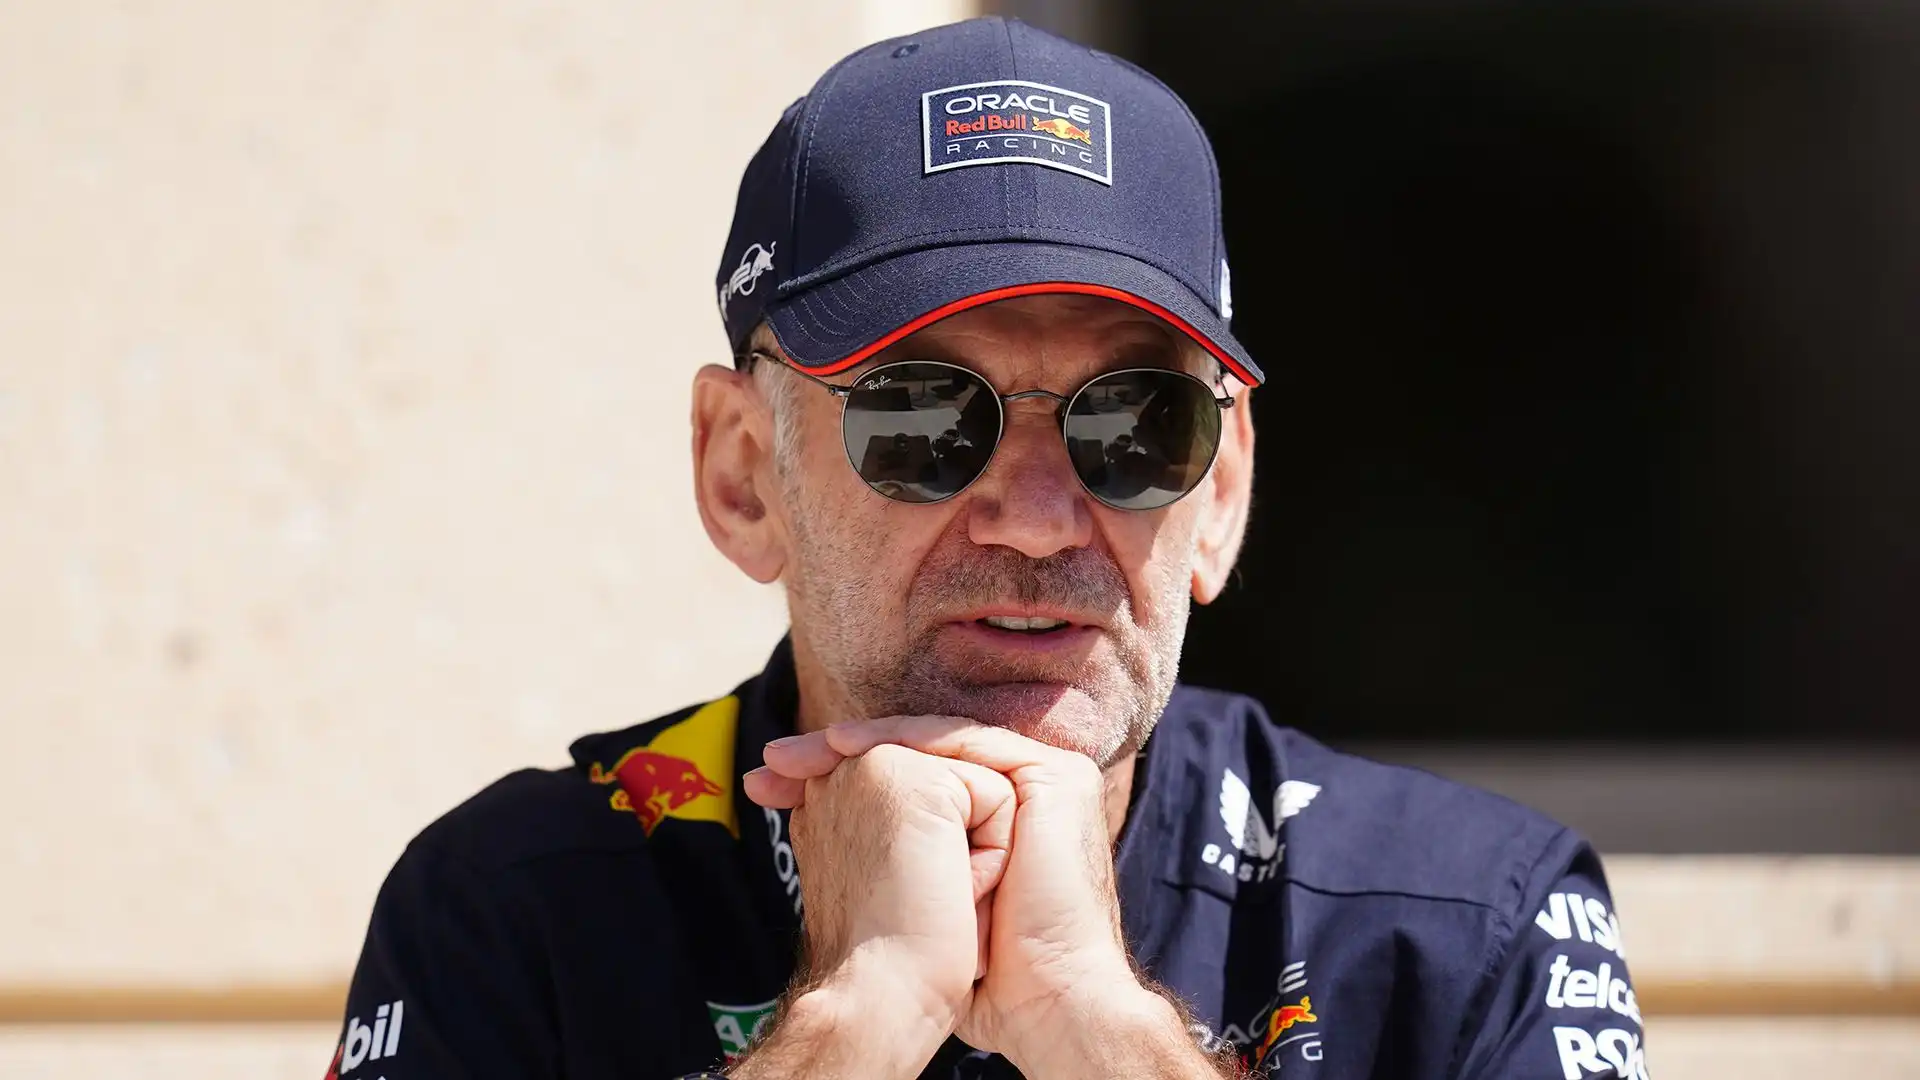 Secondo le indiscrezioni, Newey ha scelto di lasciare la Red Bull a causa della lotta di potere nel team austriaco